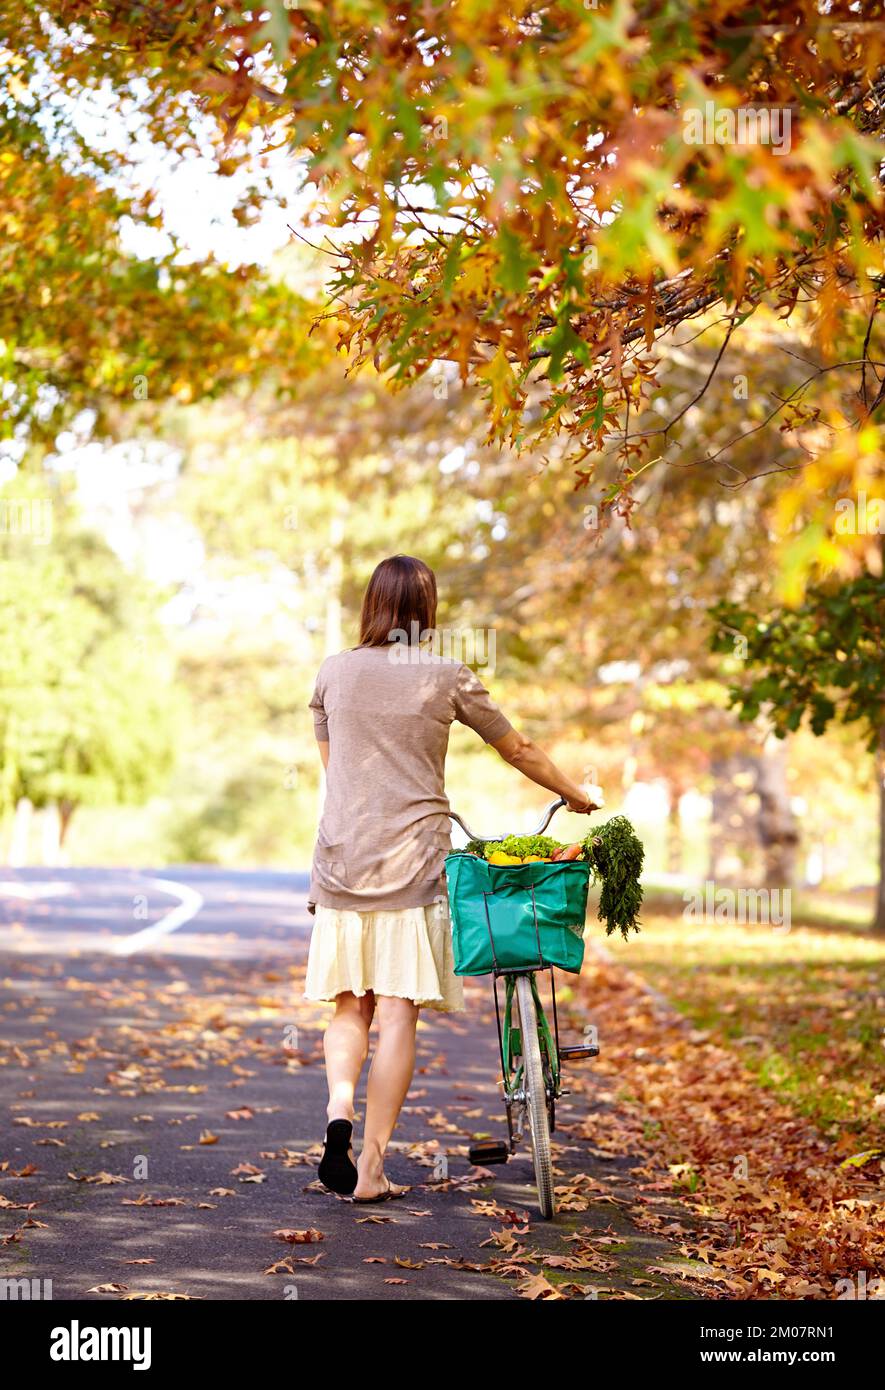 Elle a choisi le jour idéal pour emmener son vélo au magasin. Vue arrière d'une jeune femme qui rentre à la maison de l'épicerie avec son vélo. Banque D'Images